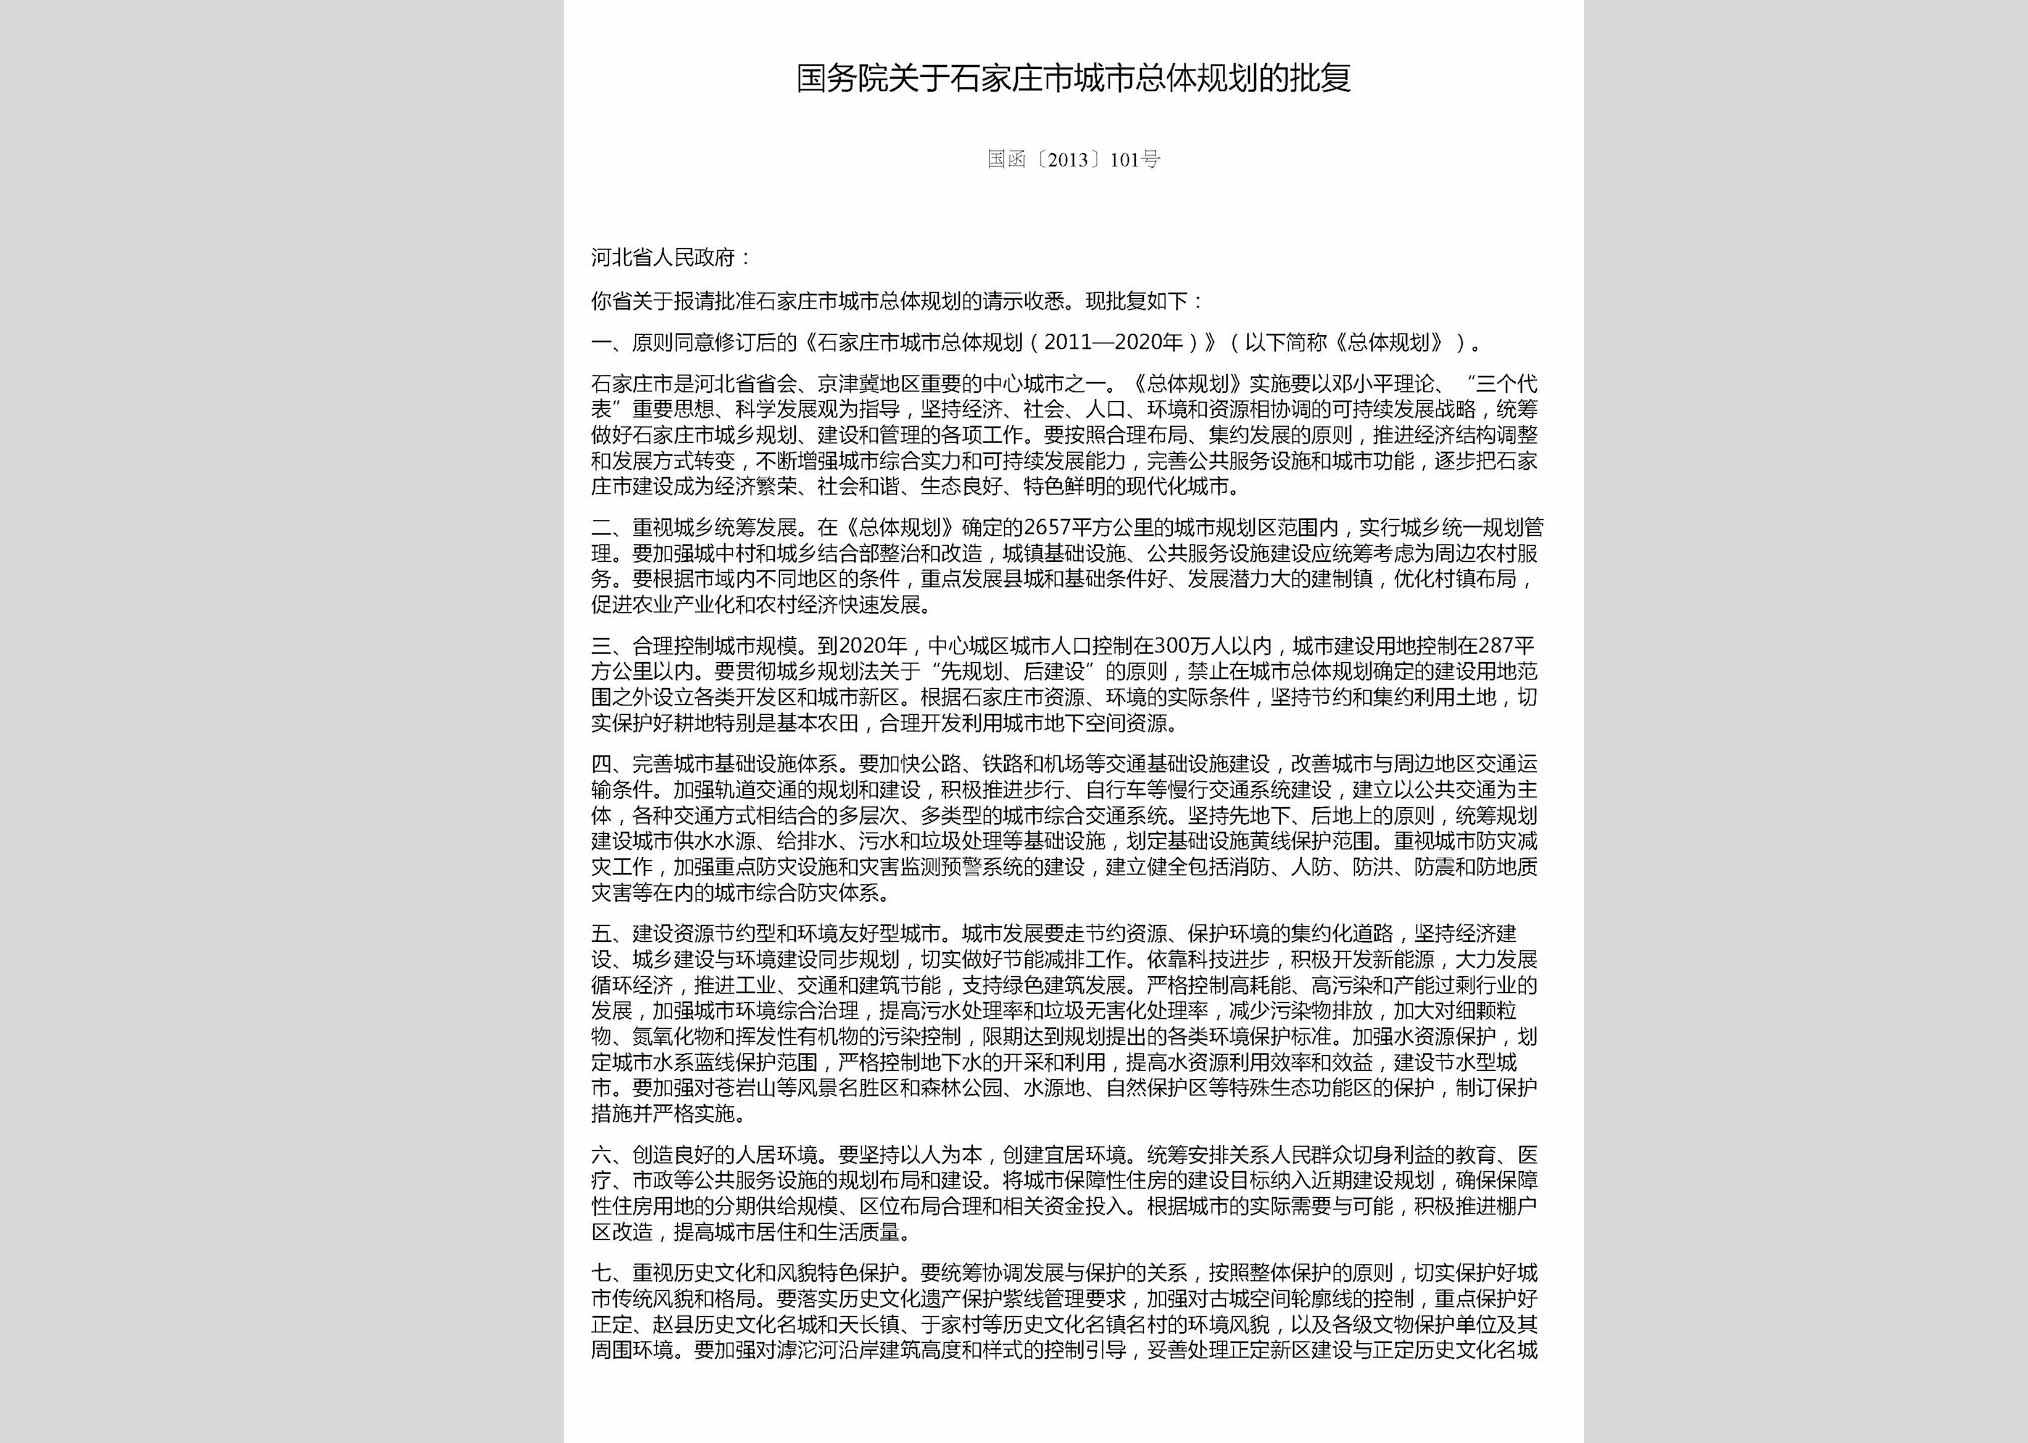 国函[2013]101号：国务院关于石家庄市城市总体规划的批复